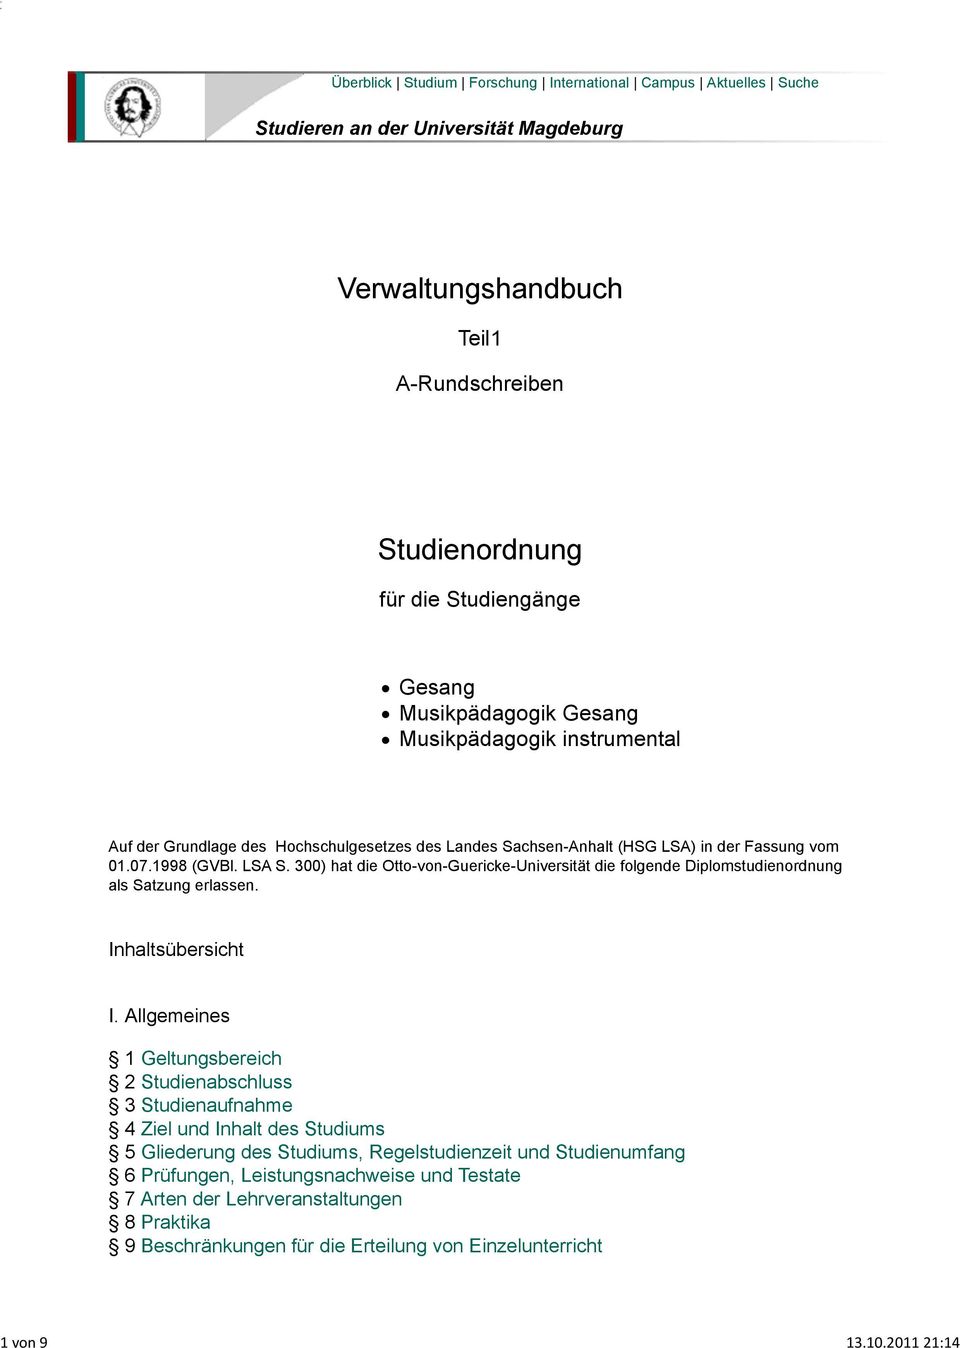 Musikpädagogik Gesang Musikpädagogik instrumental Auf der Grundlage des Hochschulgesetzes des Landes Sachsen-Anhalt (HSG LSA) in der Fassung vom 01.07.1998 (GVBl. LSA S.